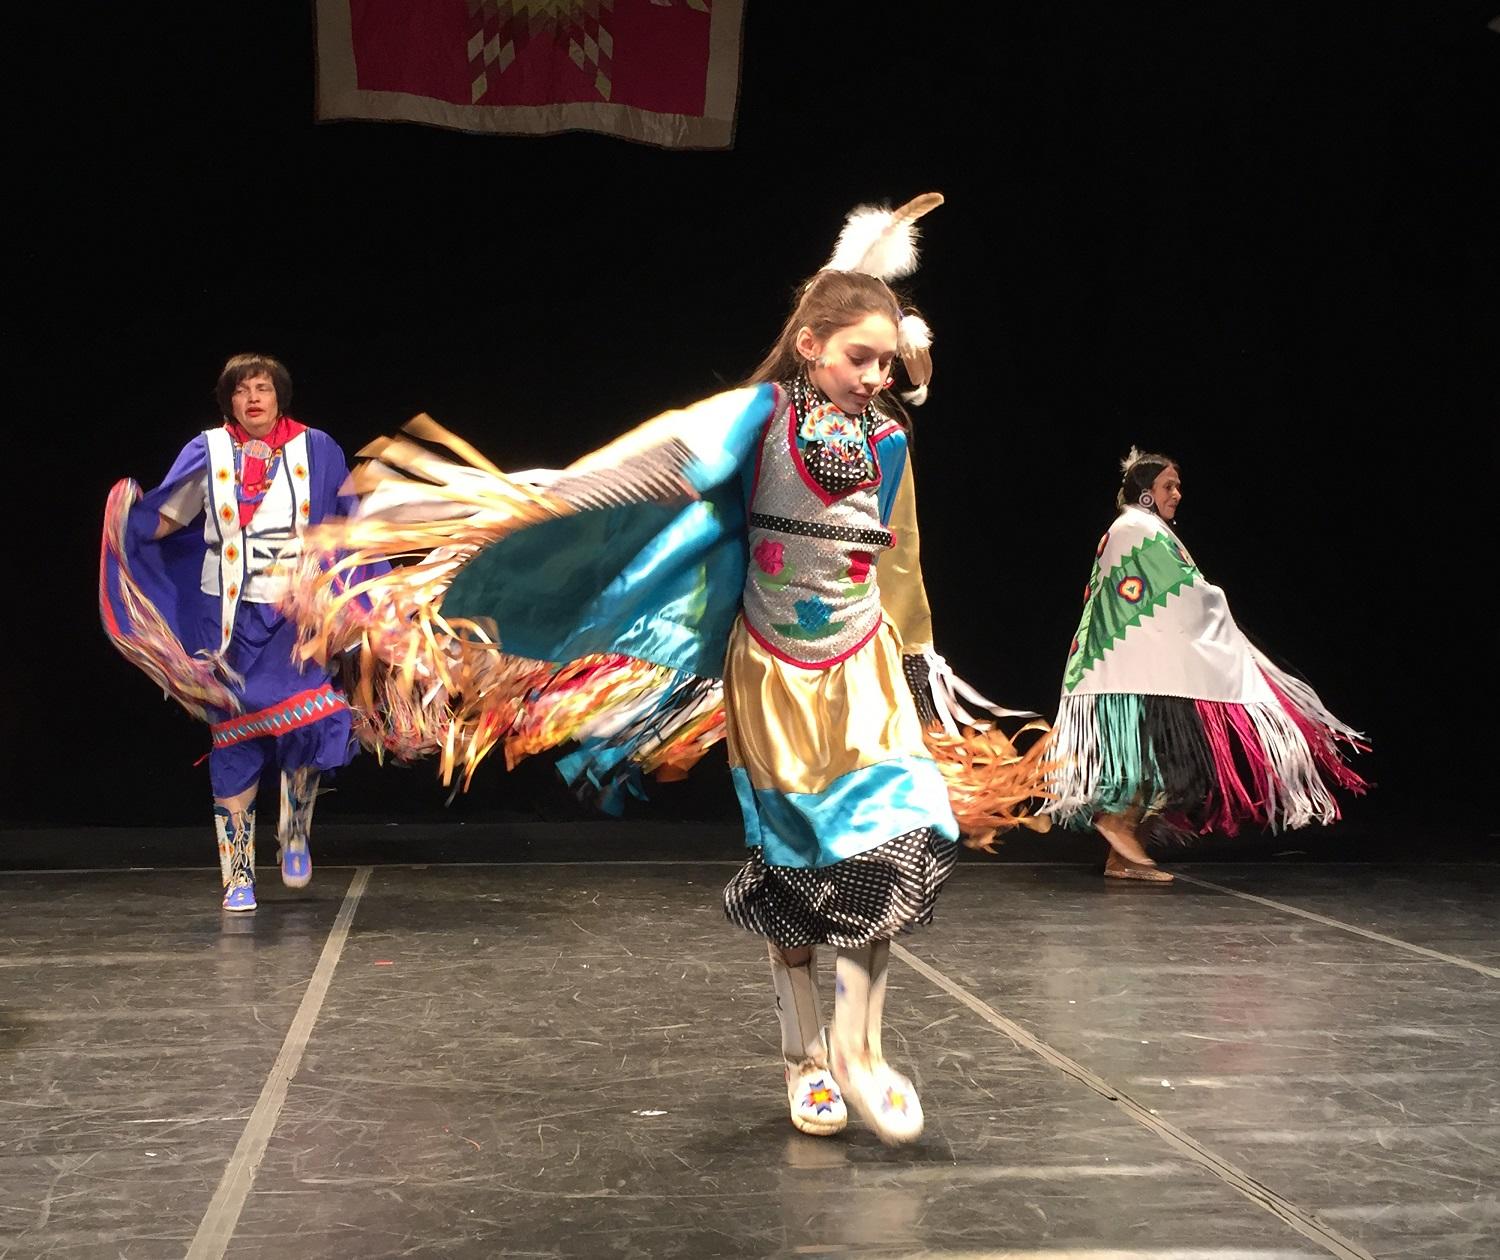 رقصة تقليدية تؤديها فتاة من السكان الأصليين للولايات المتحدة في مدينة نيويورك، 3 فبراير 2019. أ ف ب 